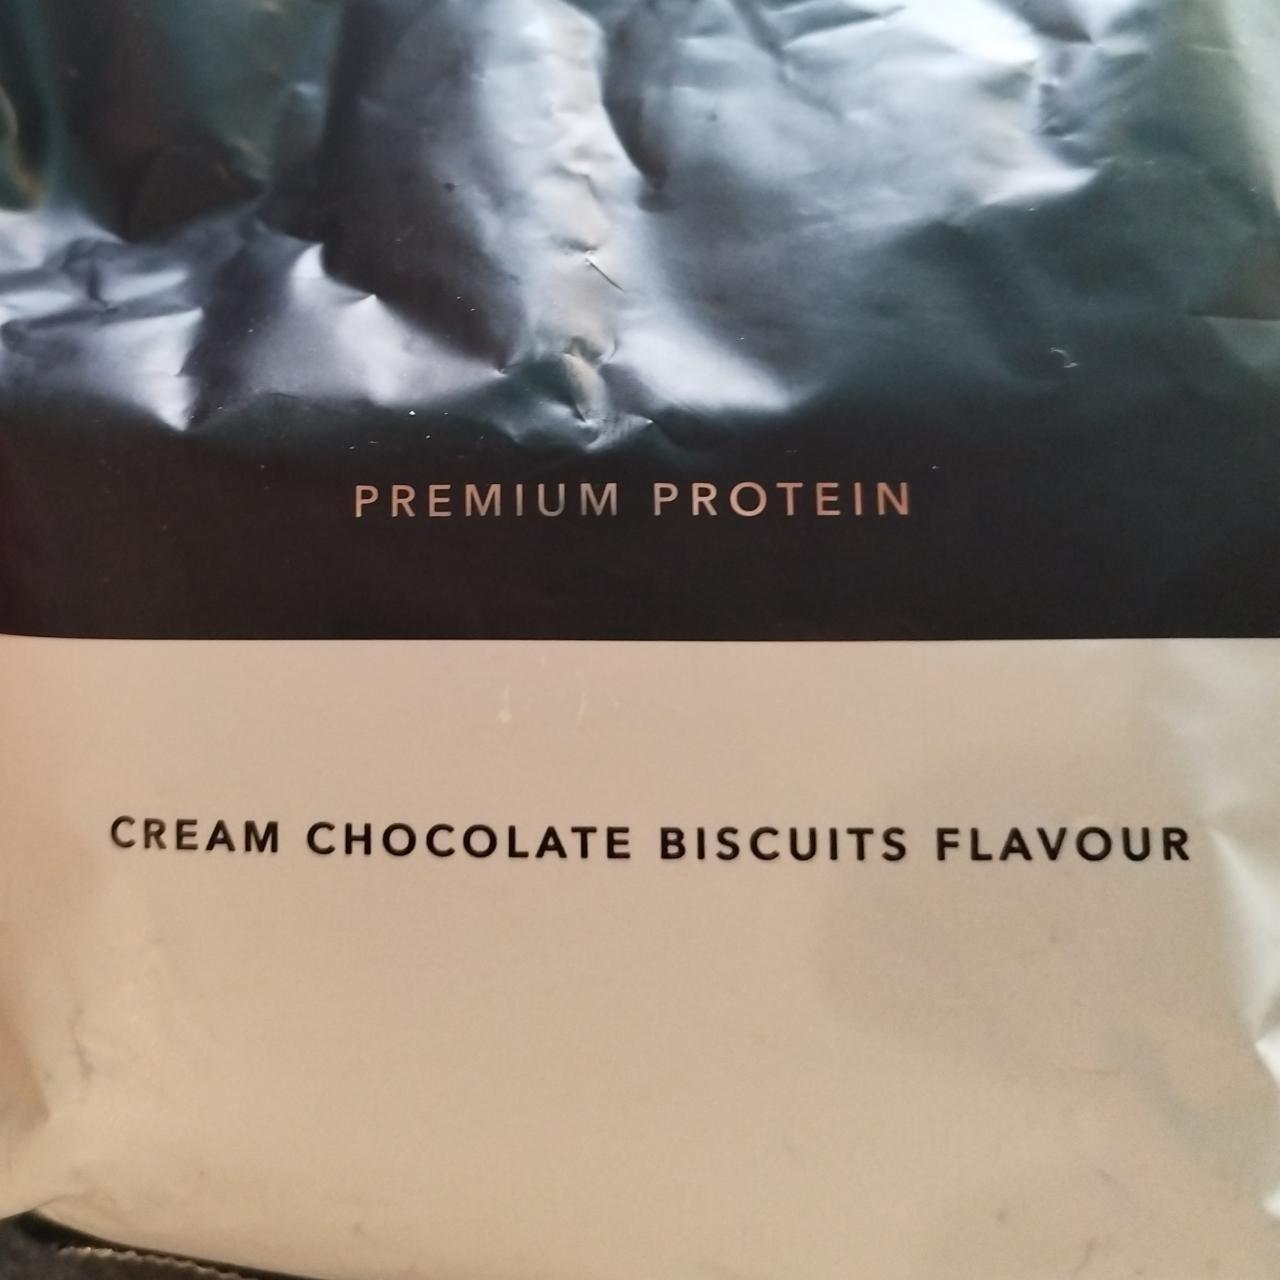 Képek - Cream chocolate biscuits flavour Premium protein